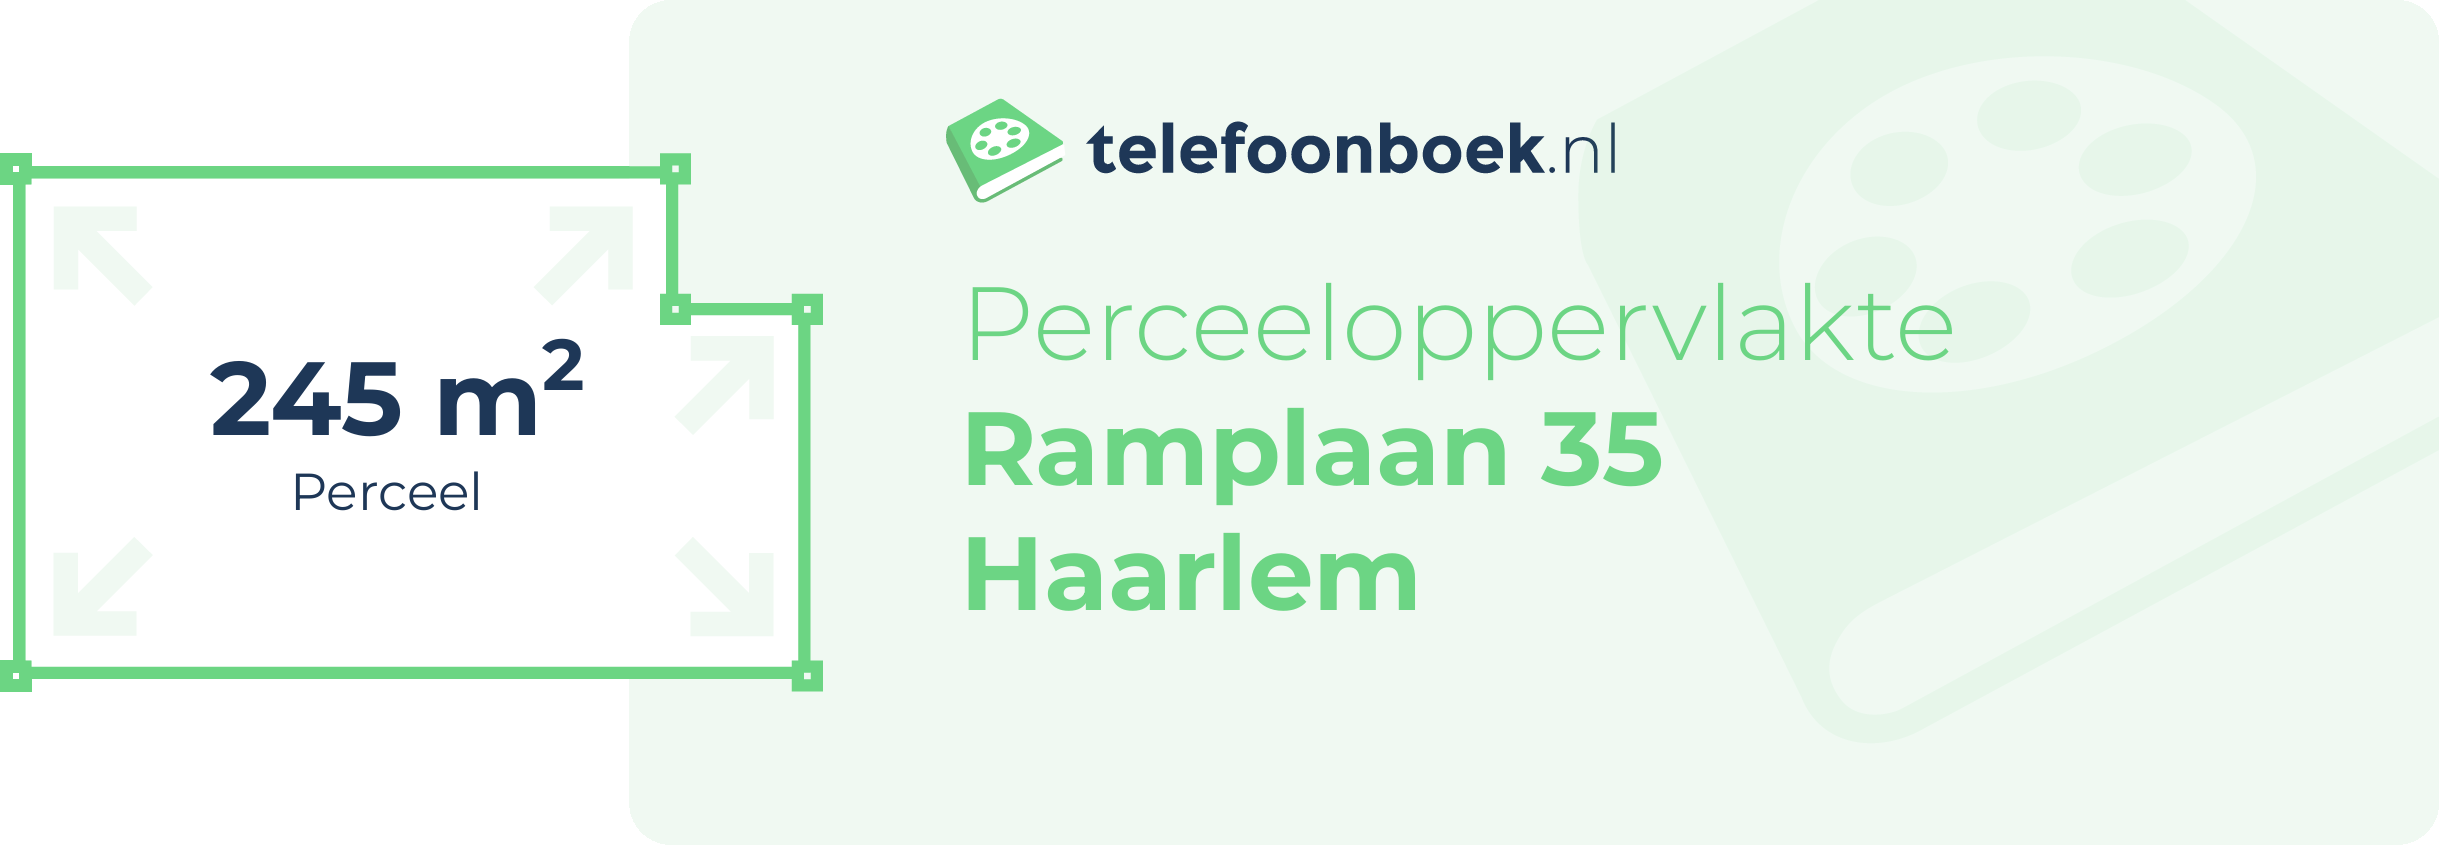 Perceeloppervlakte Ramplaan 35 Haarlem